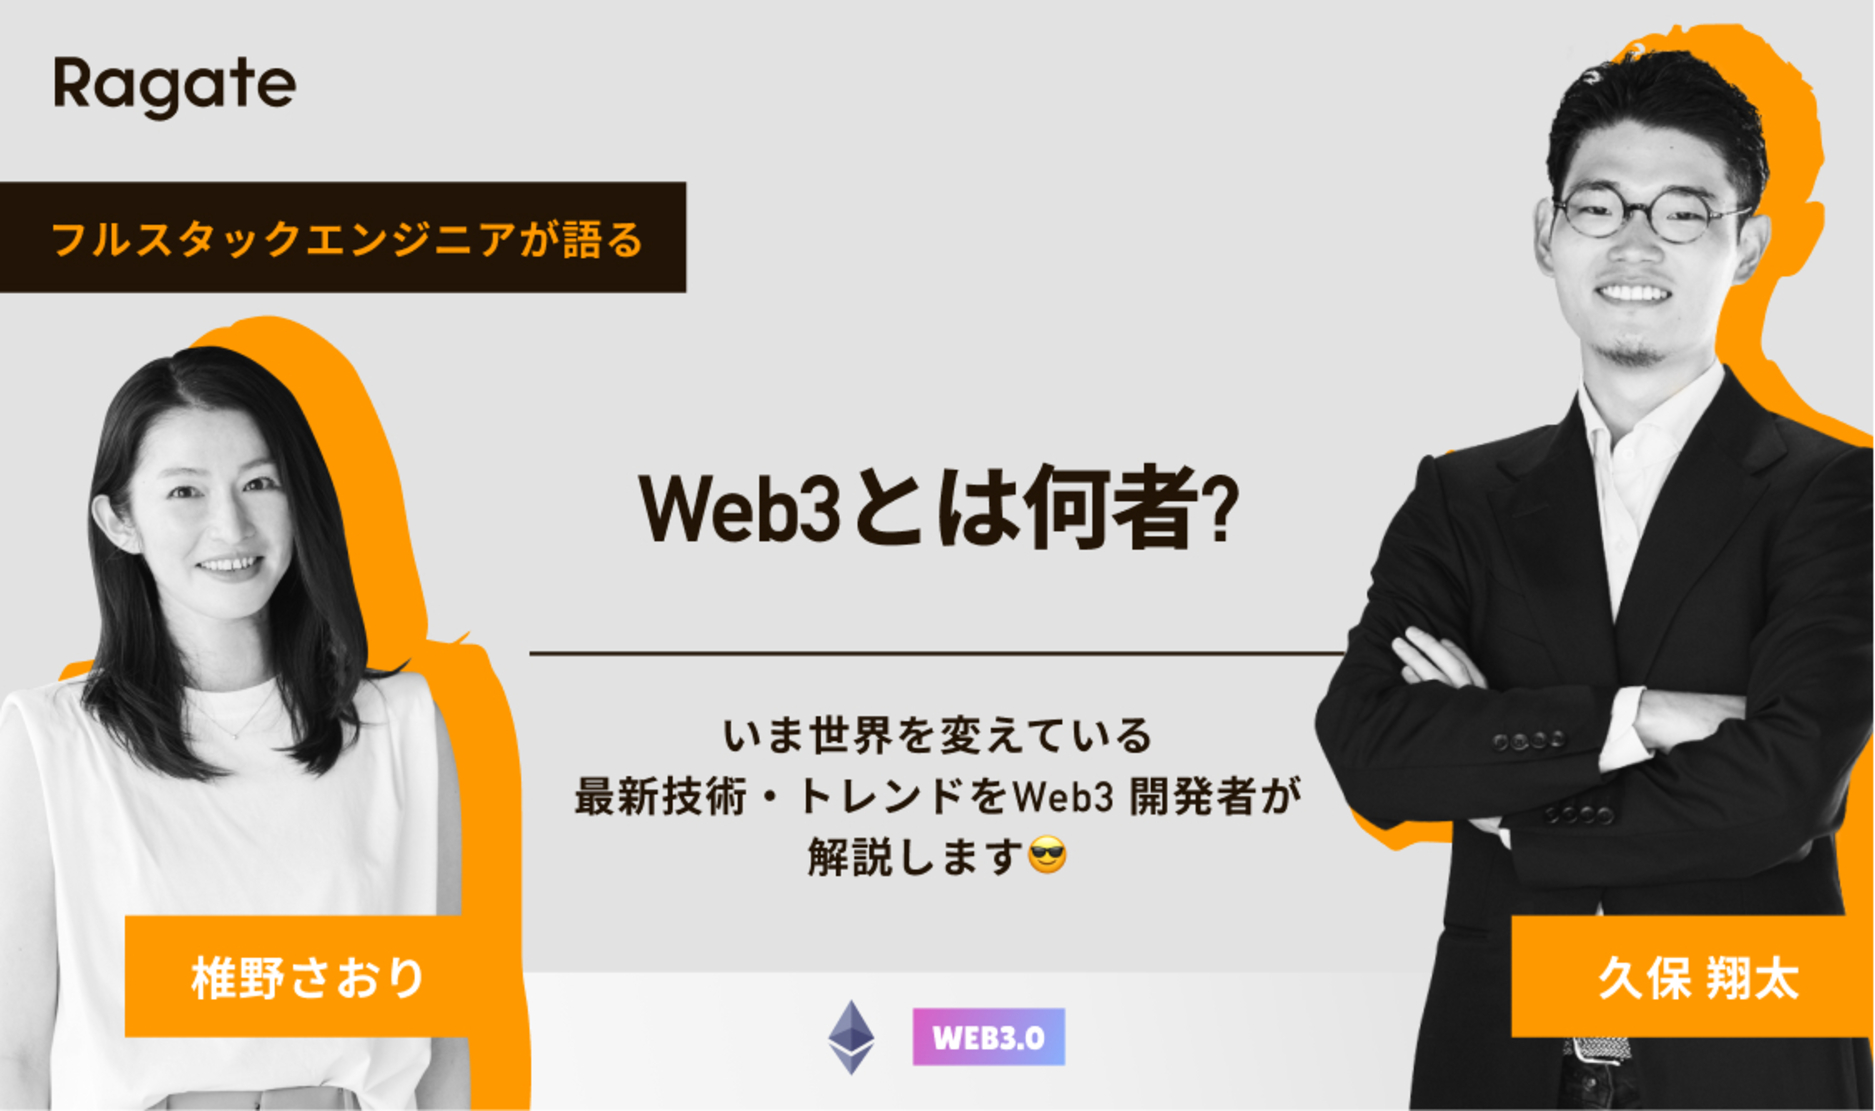 Web3とは何者?いま世界を変えている最新技術・トレンドをWeb3 開発者が解説します😎